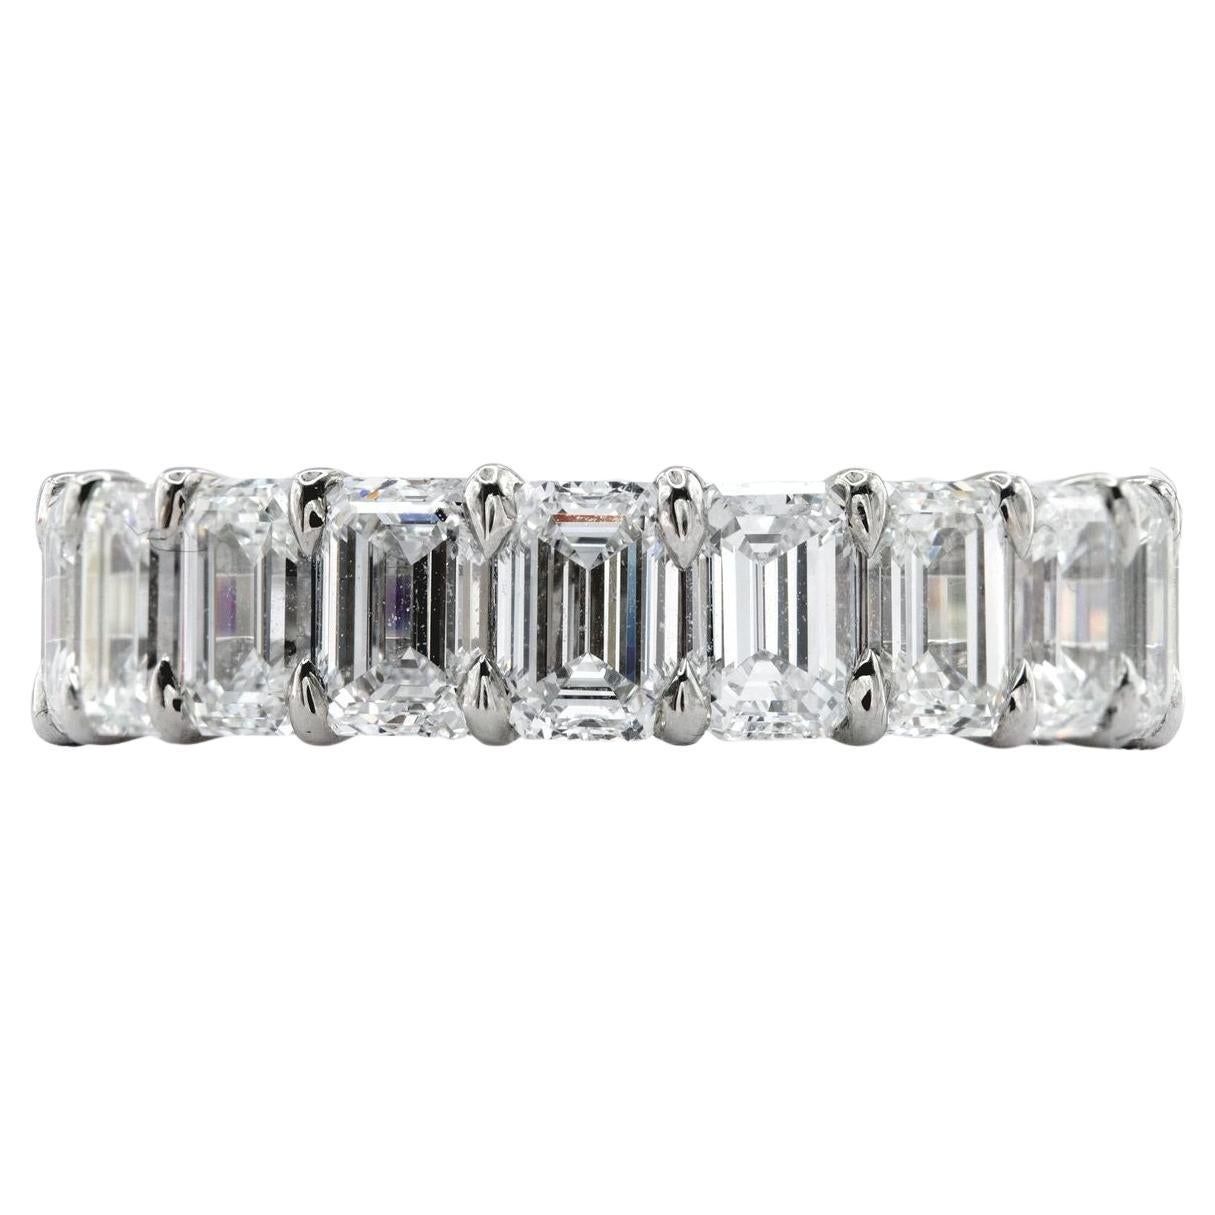 Les diamants sont tous d'un blanc éclatant, classés D-F pour la couleur. Classés VVS1-VS2 pour la clarté, ils étaient propres à l'œil. Les diamants sont brillants et éclatants. Les diamants sont tous extraits naturellement de la terre et n'ont reçu